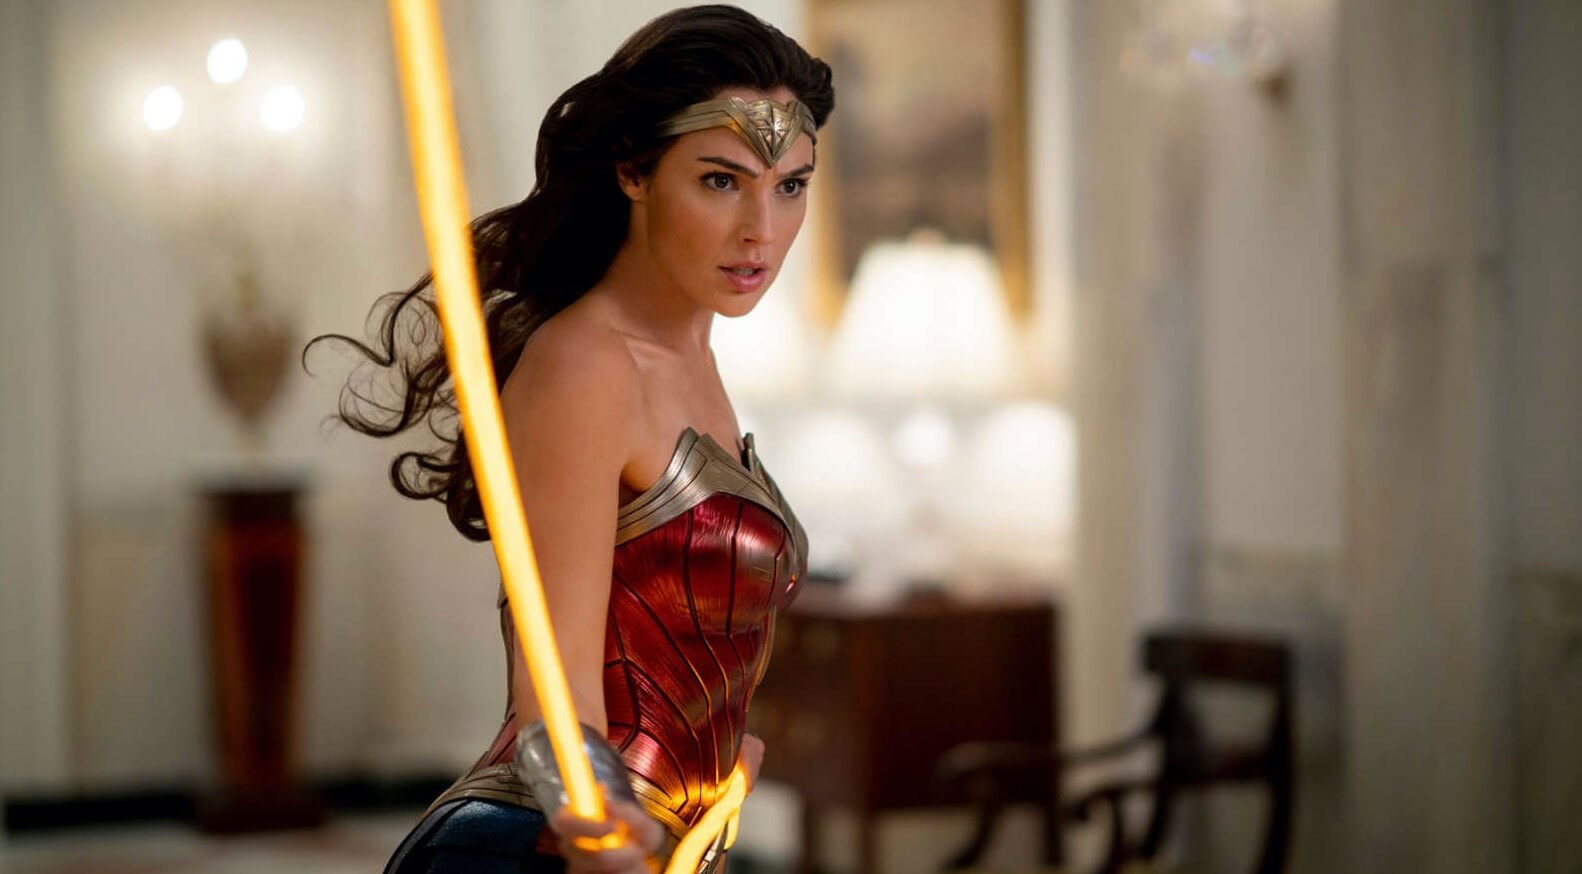 Patty Jenkins rendezőnek már ötlete is van, hogy miről szólhat a Wonder Woman 4. rész